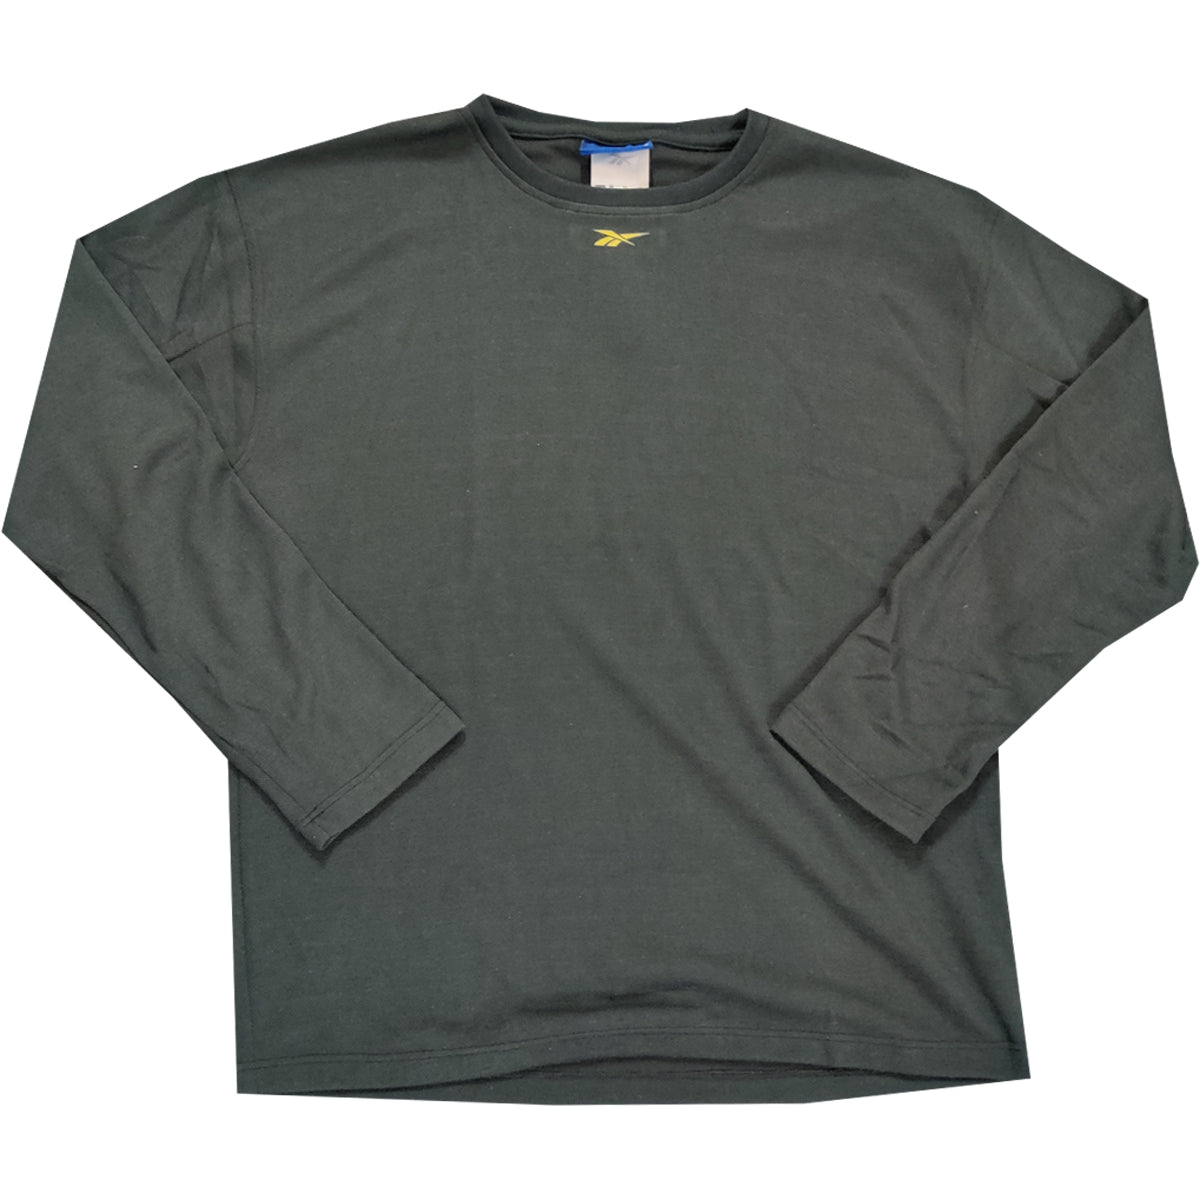 Reebok Mens Clearance Black LS Fitness T-Shirt - Medium